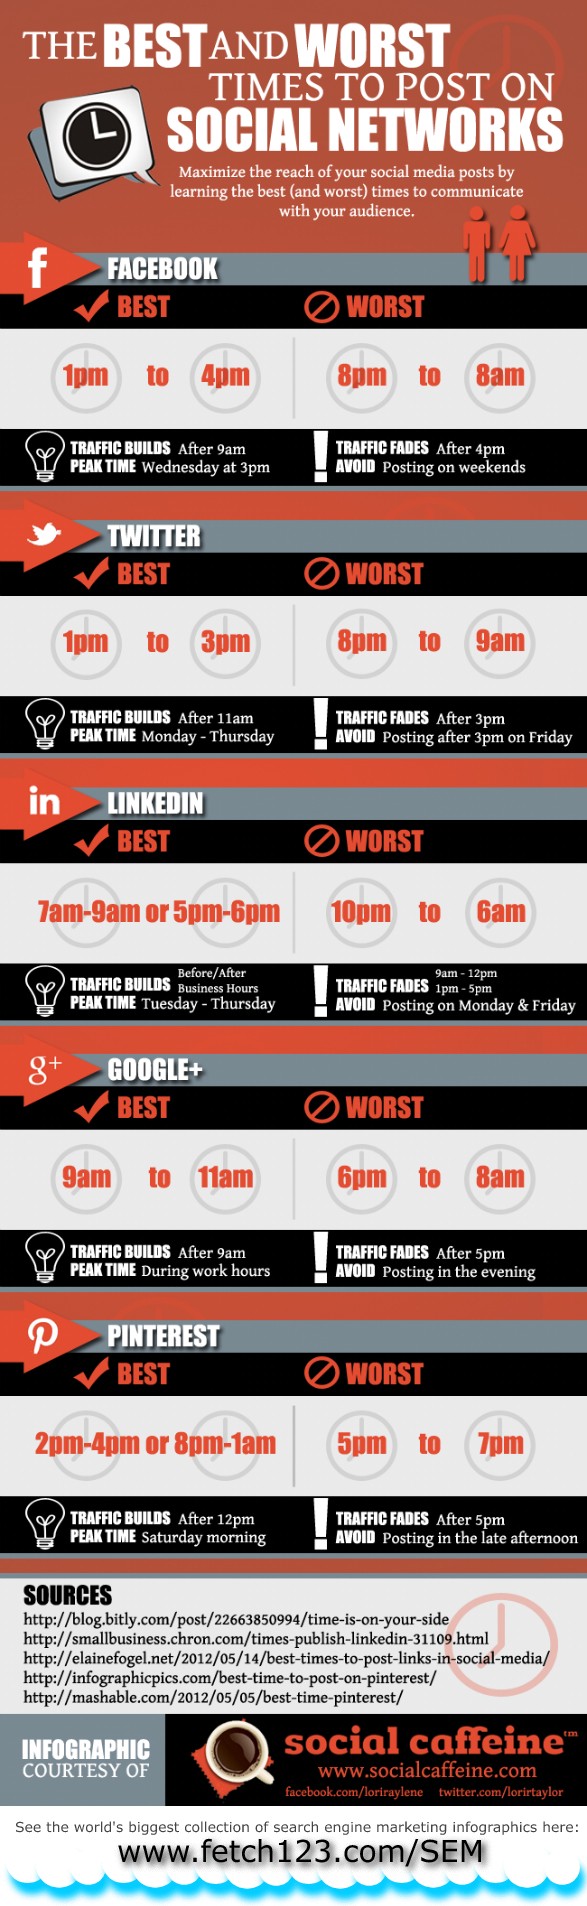 Las mejores y peores horas para publicar en las redes sociales 1